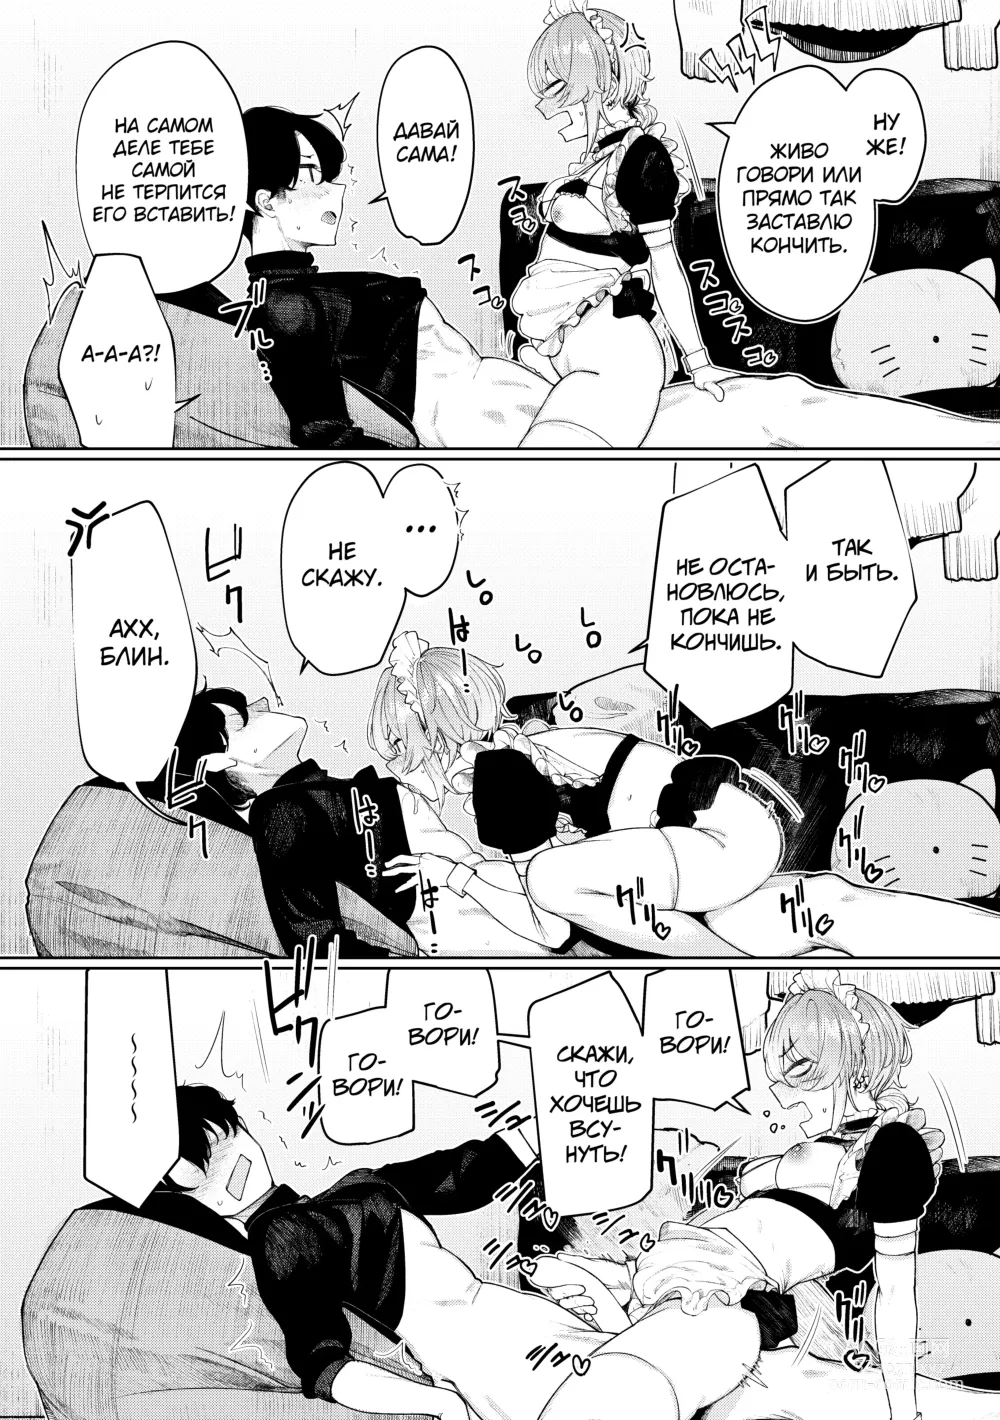 Page 21 of doujinshi Furyouppoi Kanojo to Daradara Cosplay kusu.